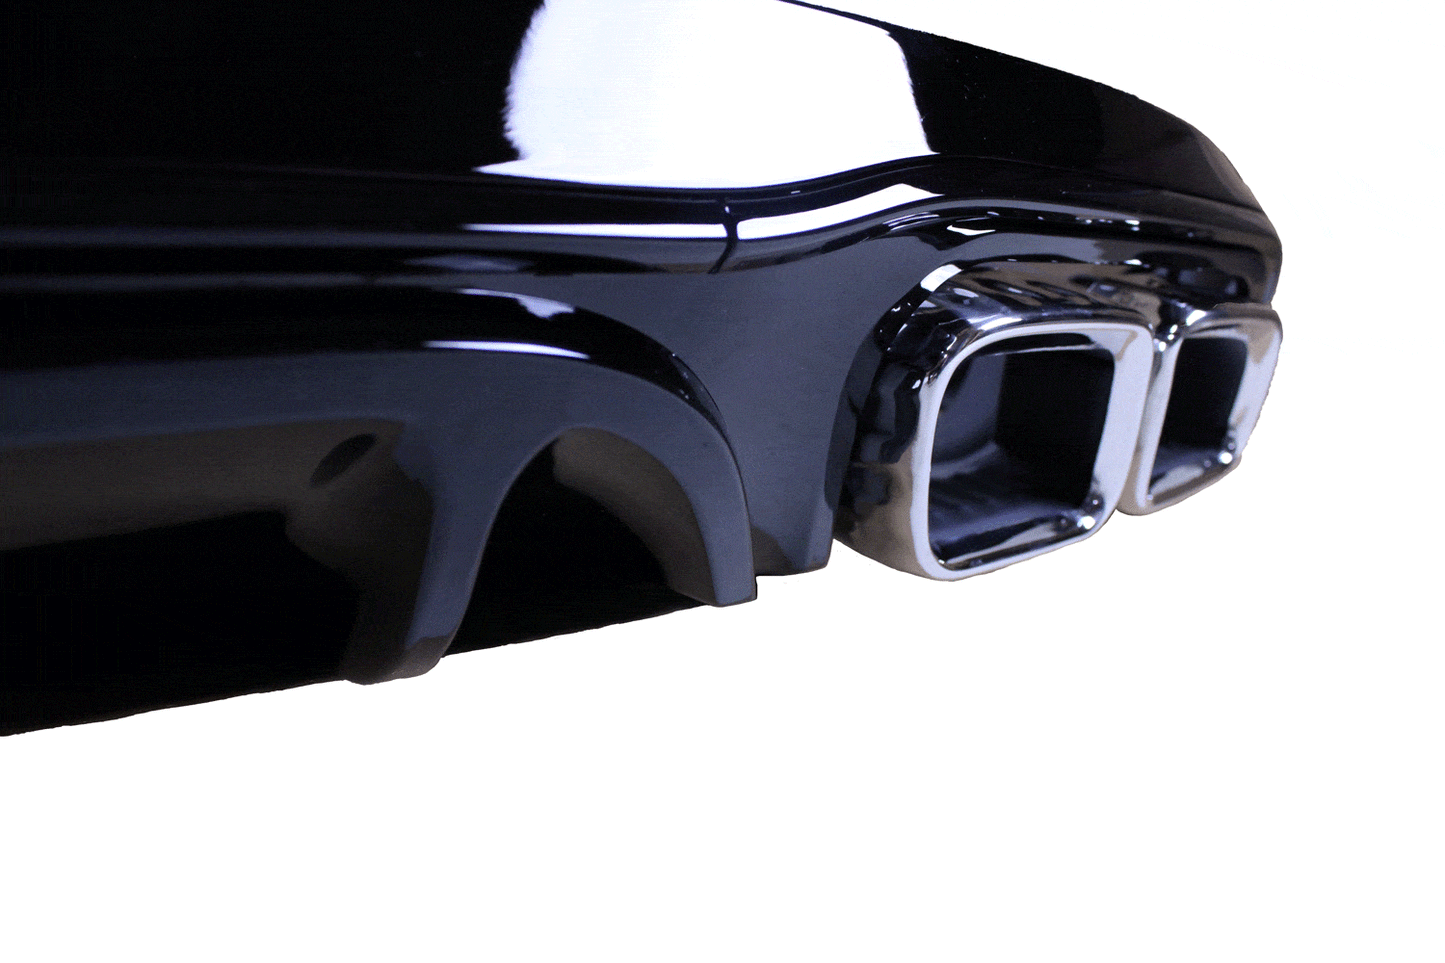 Diffuser glanzend zwart compatibel met Mercedes E coupé cabrio C238 A238 chrome uitlaatsierstukken - Tuningonline